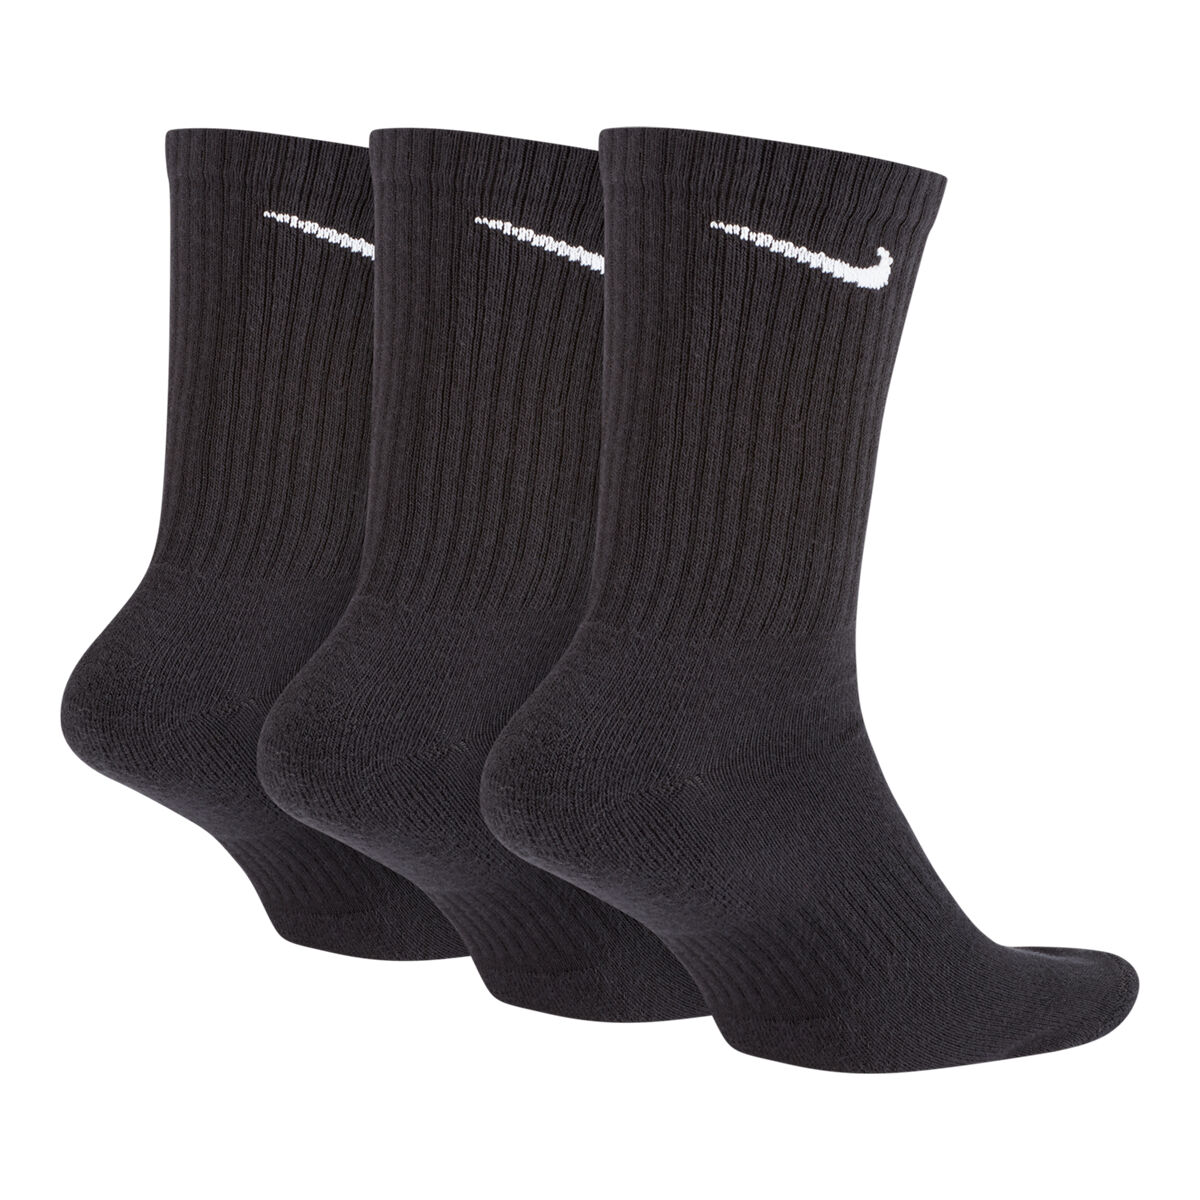 nike socks black and white pack